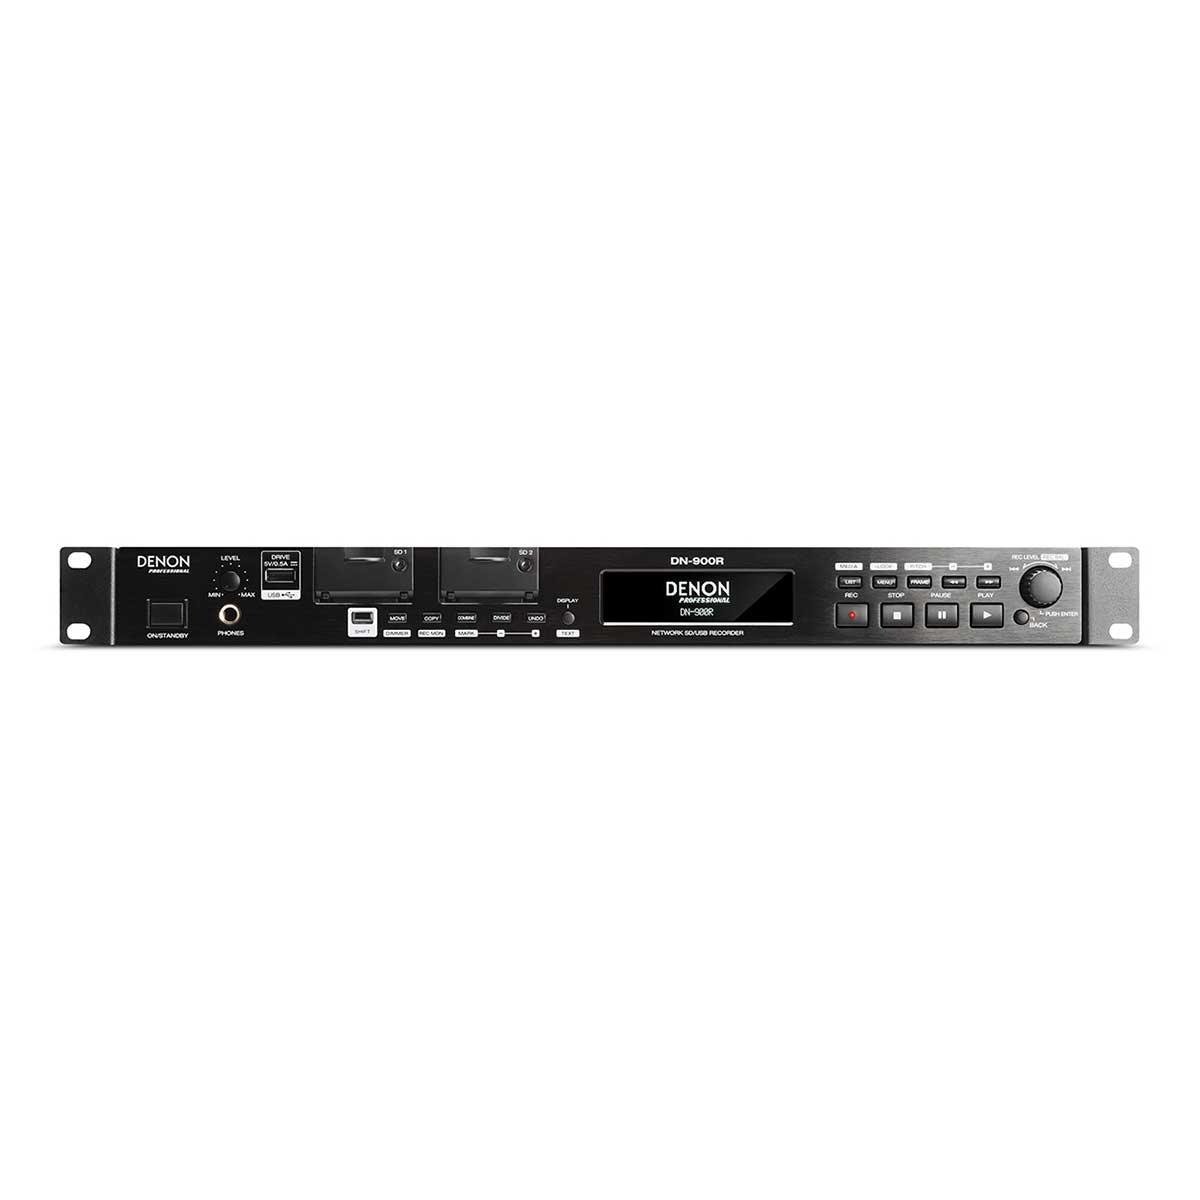 Denon Pro DN-900R Network SD/USB Audio Recorder with Dante 2 x 2 Interface